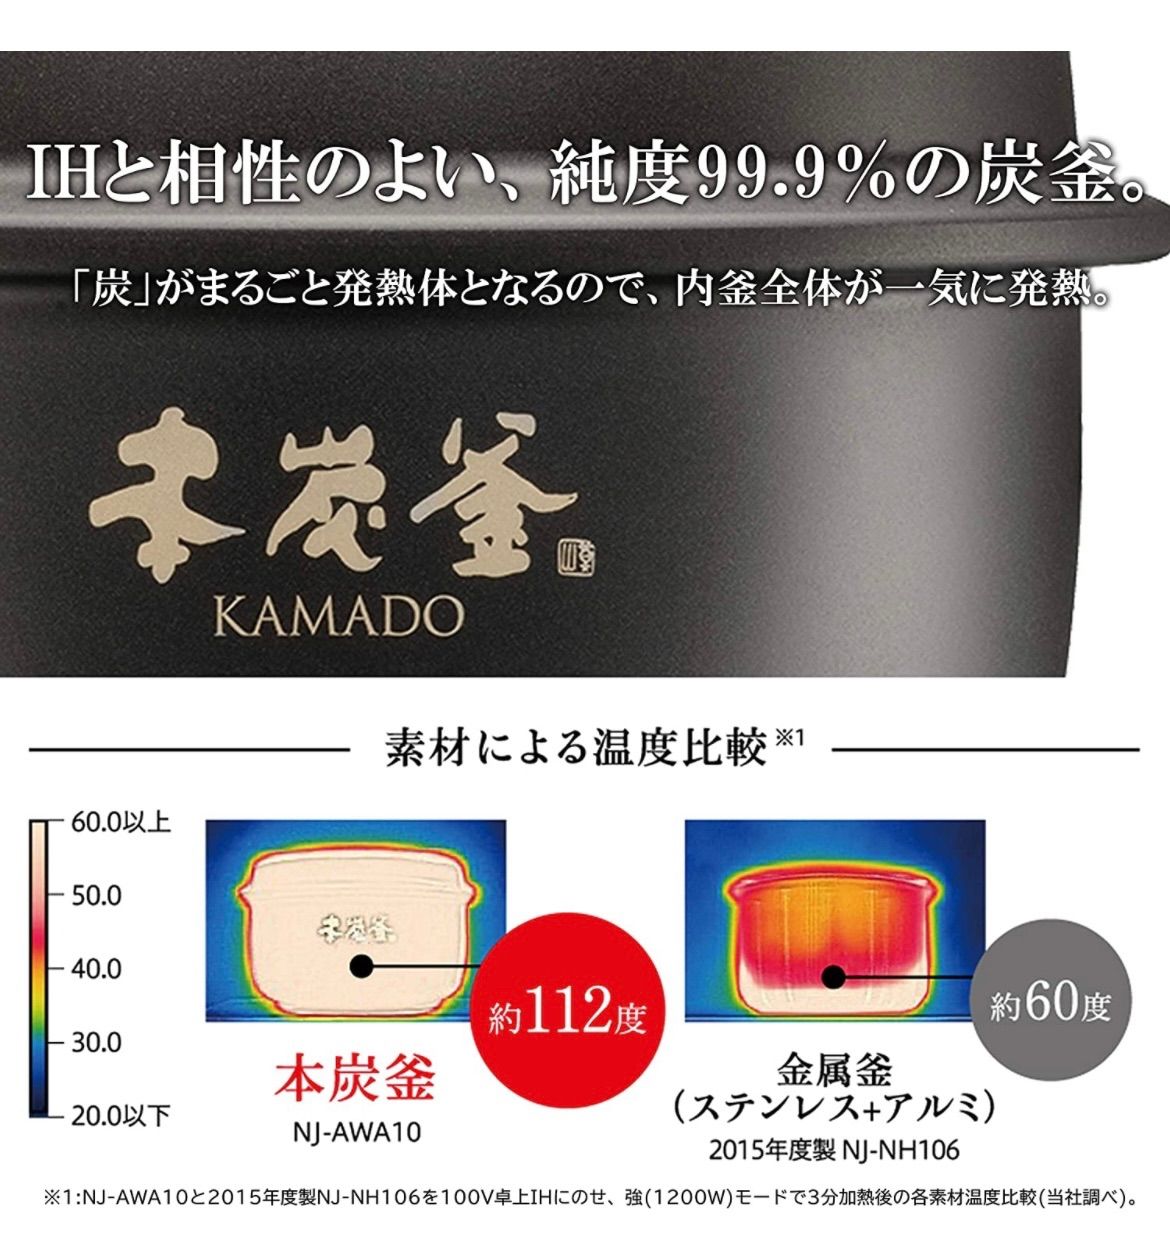 三菱電機 本炭釜 KAMADO NJ-AWA10-W 白真珠 炊飯ジャー 炊飯器 銘柄